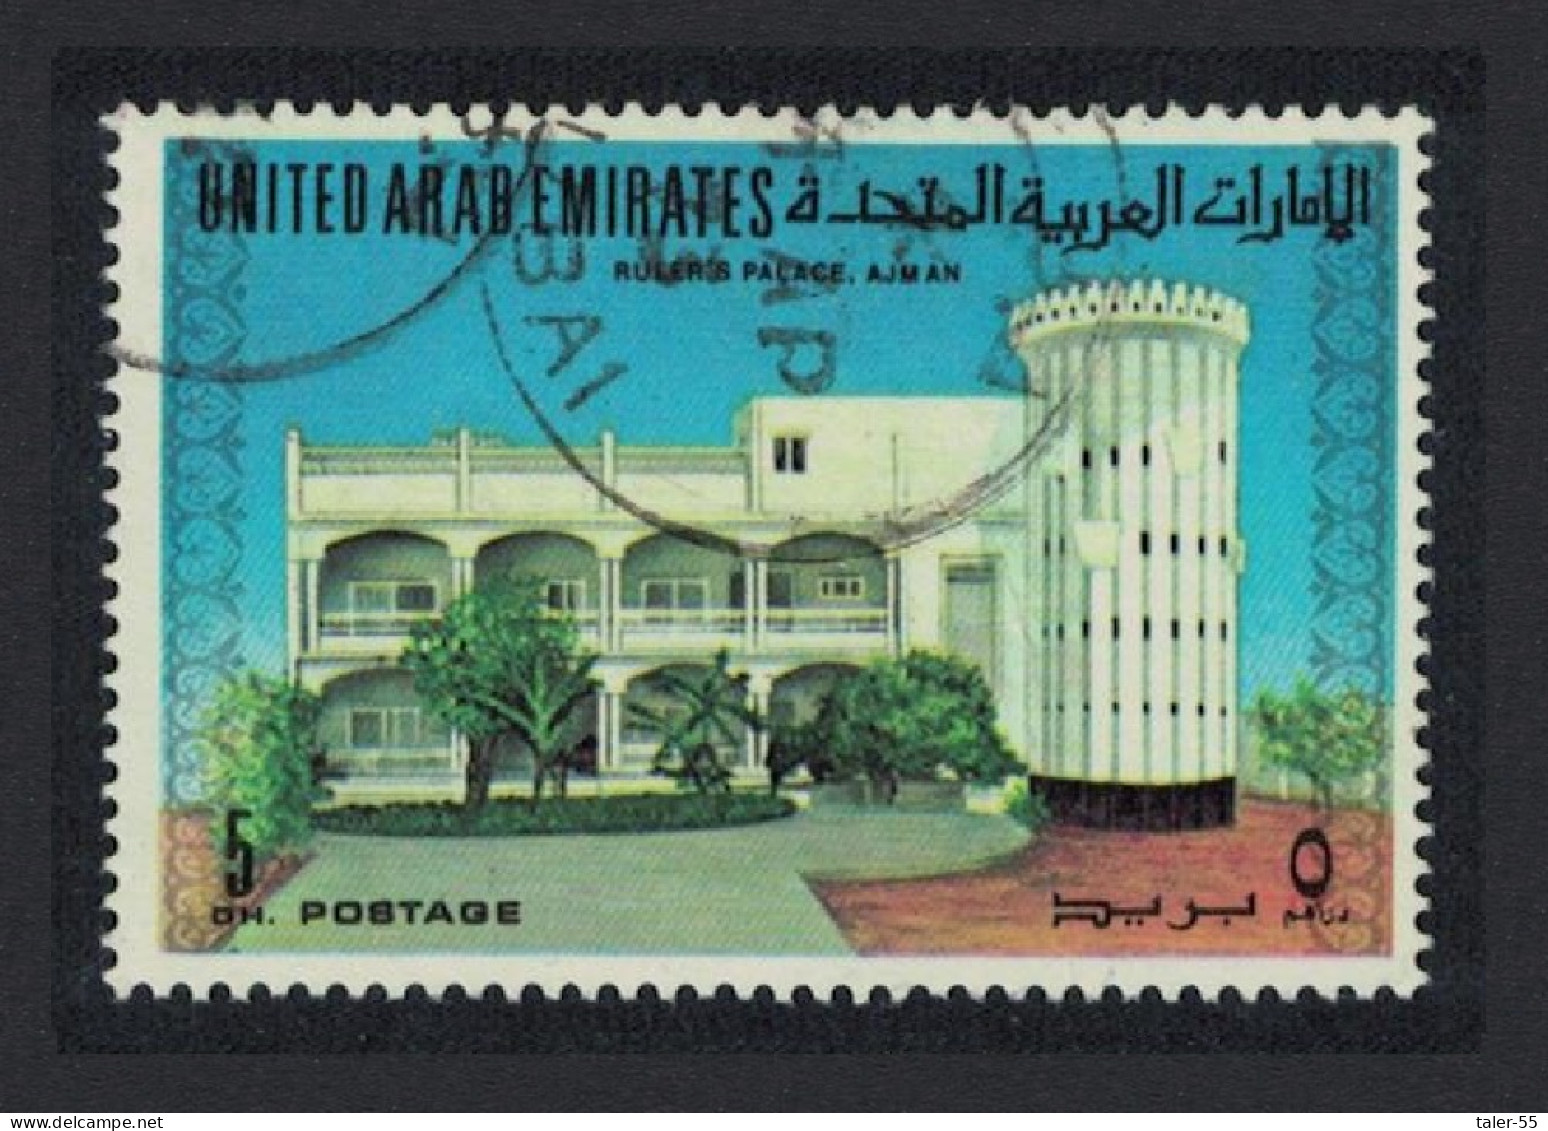 United Arab Emirates Ruler's Palace Ajman 5 Dh 1973 MNH SG#11 MI#11 - Emirati Arabi Uniti